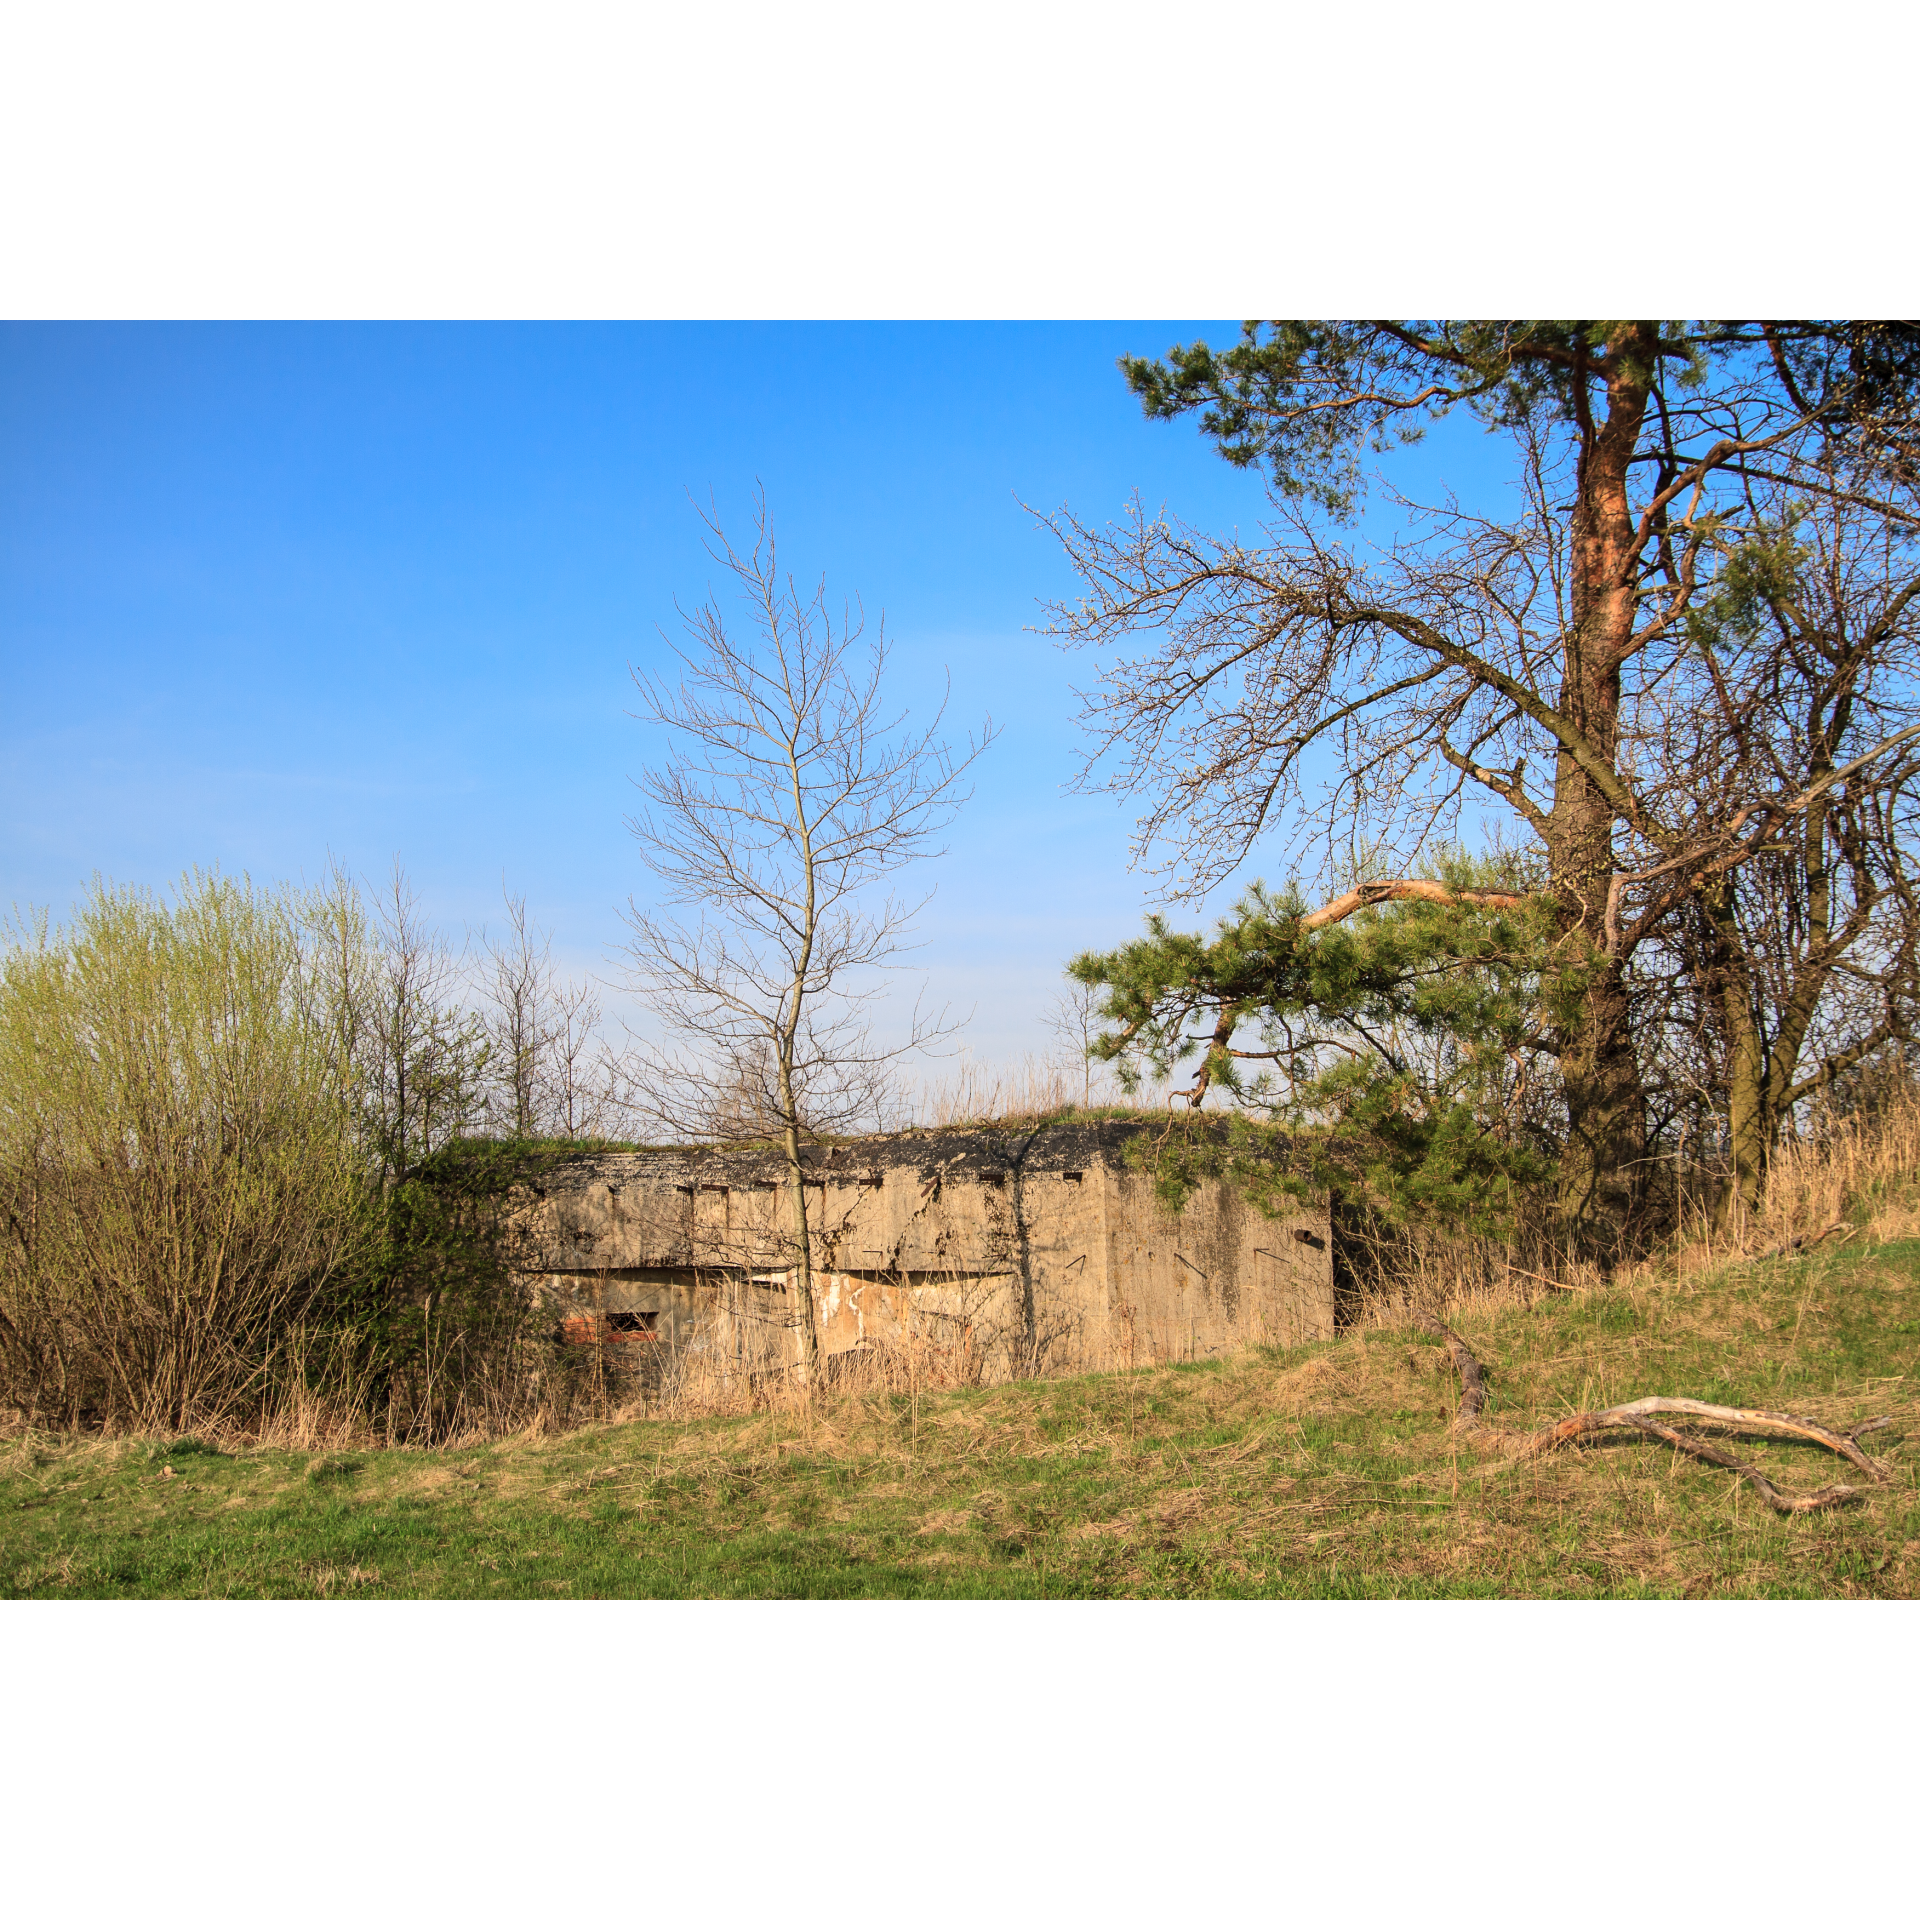 Pas bunkrów - zniszczone betonowe stanowiska otoczone drzewami i wysoką trawą na tle niebieskiego nieba